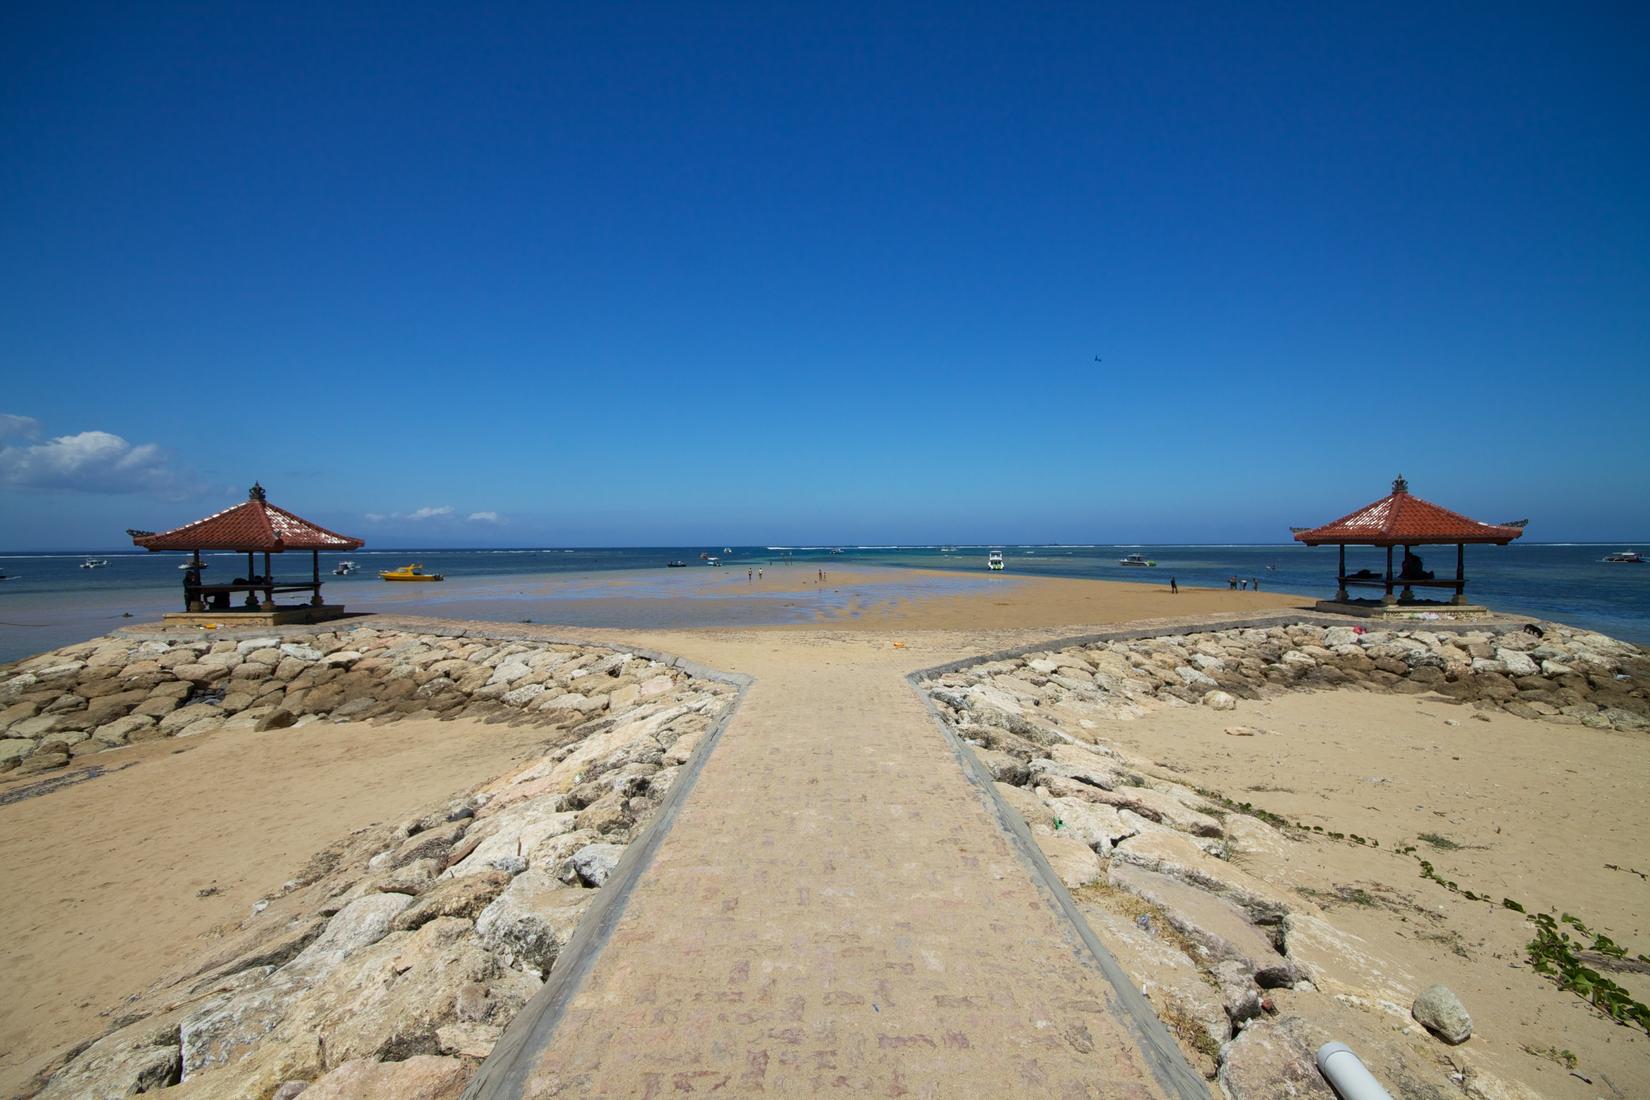 Sandee - Sanur Beach